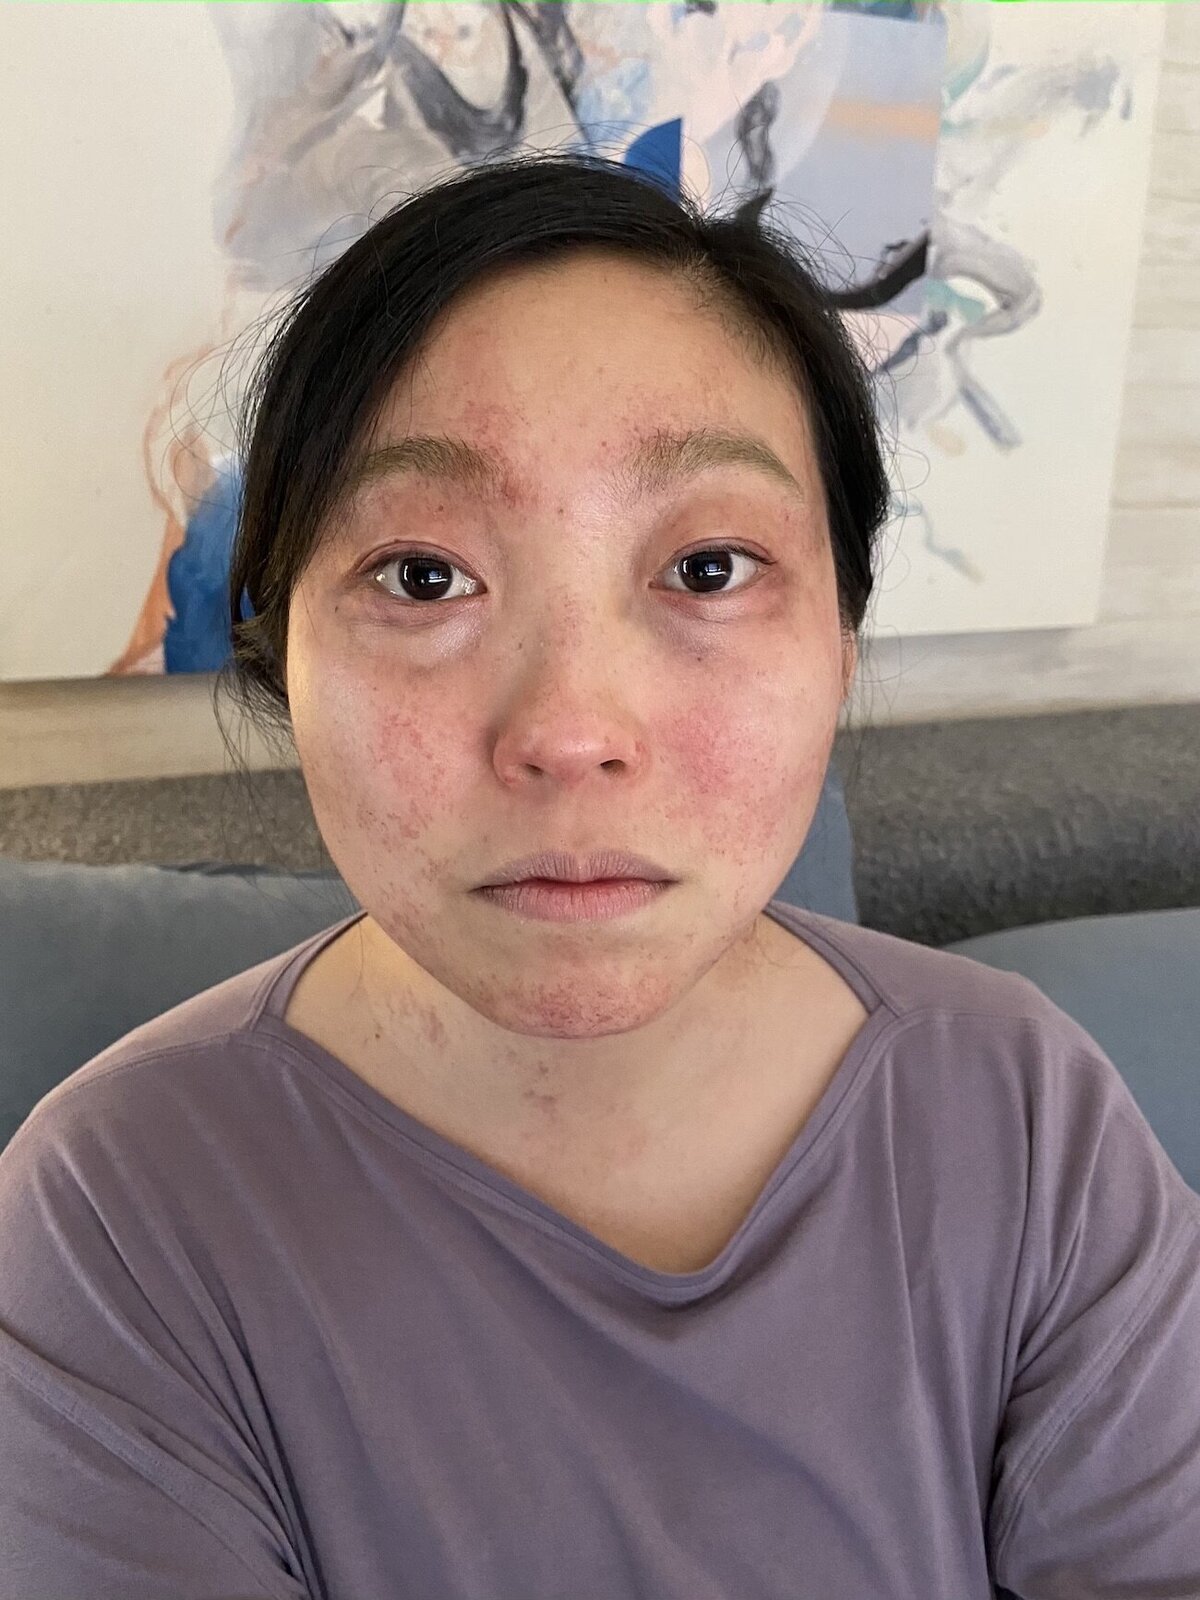 woman-fake-bruises-face-makeup-fx